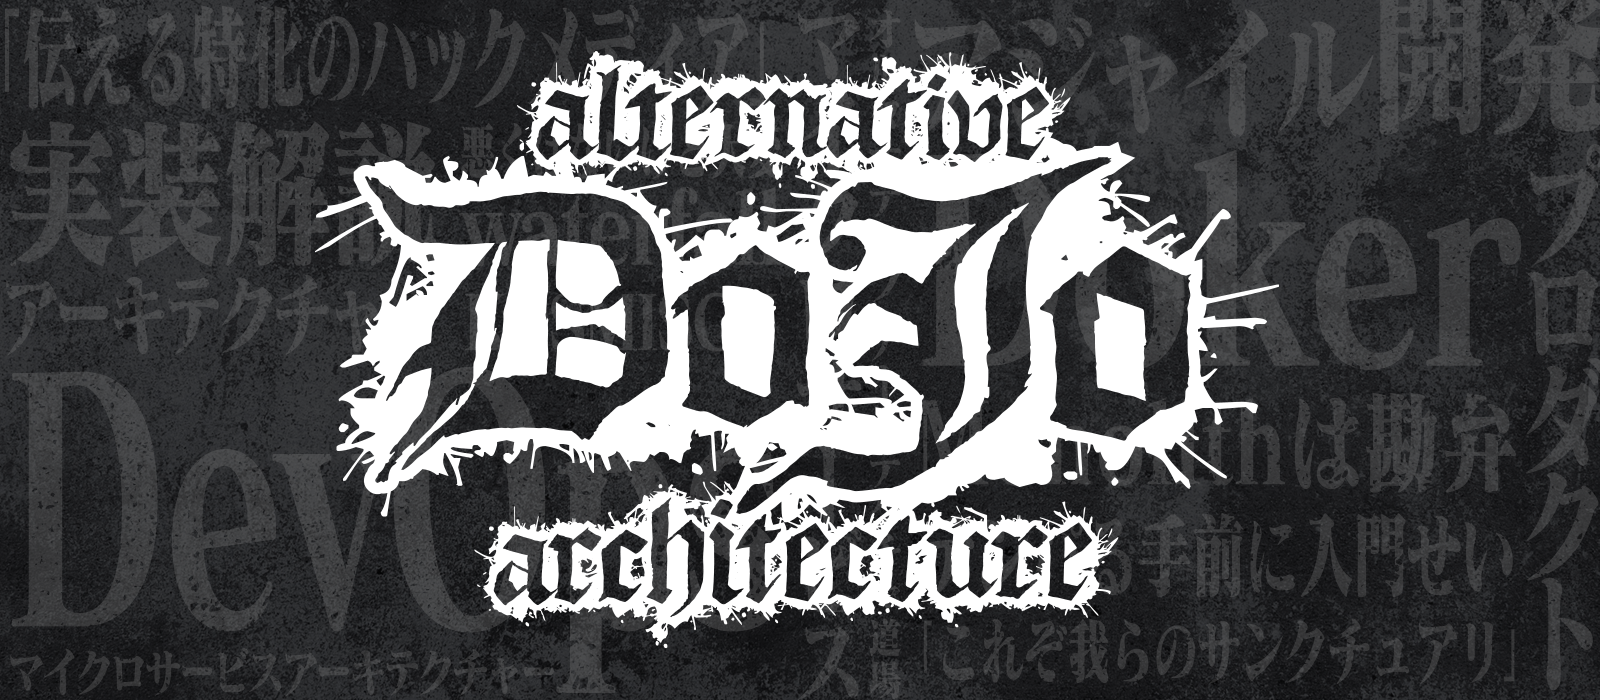 「Alternative Architecture DOJO #5」を開催